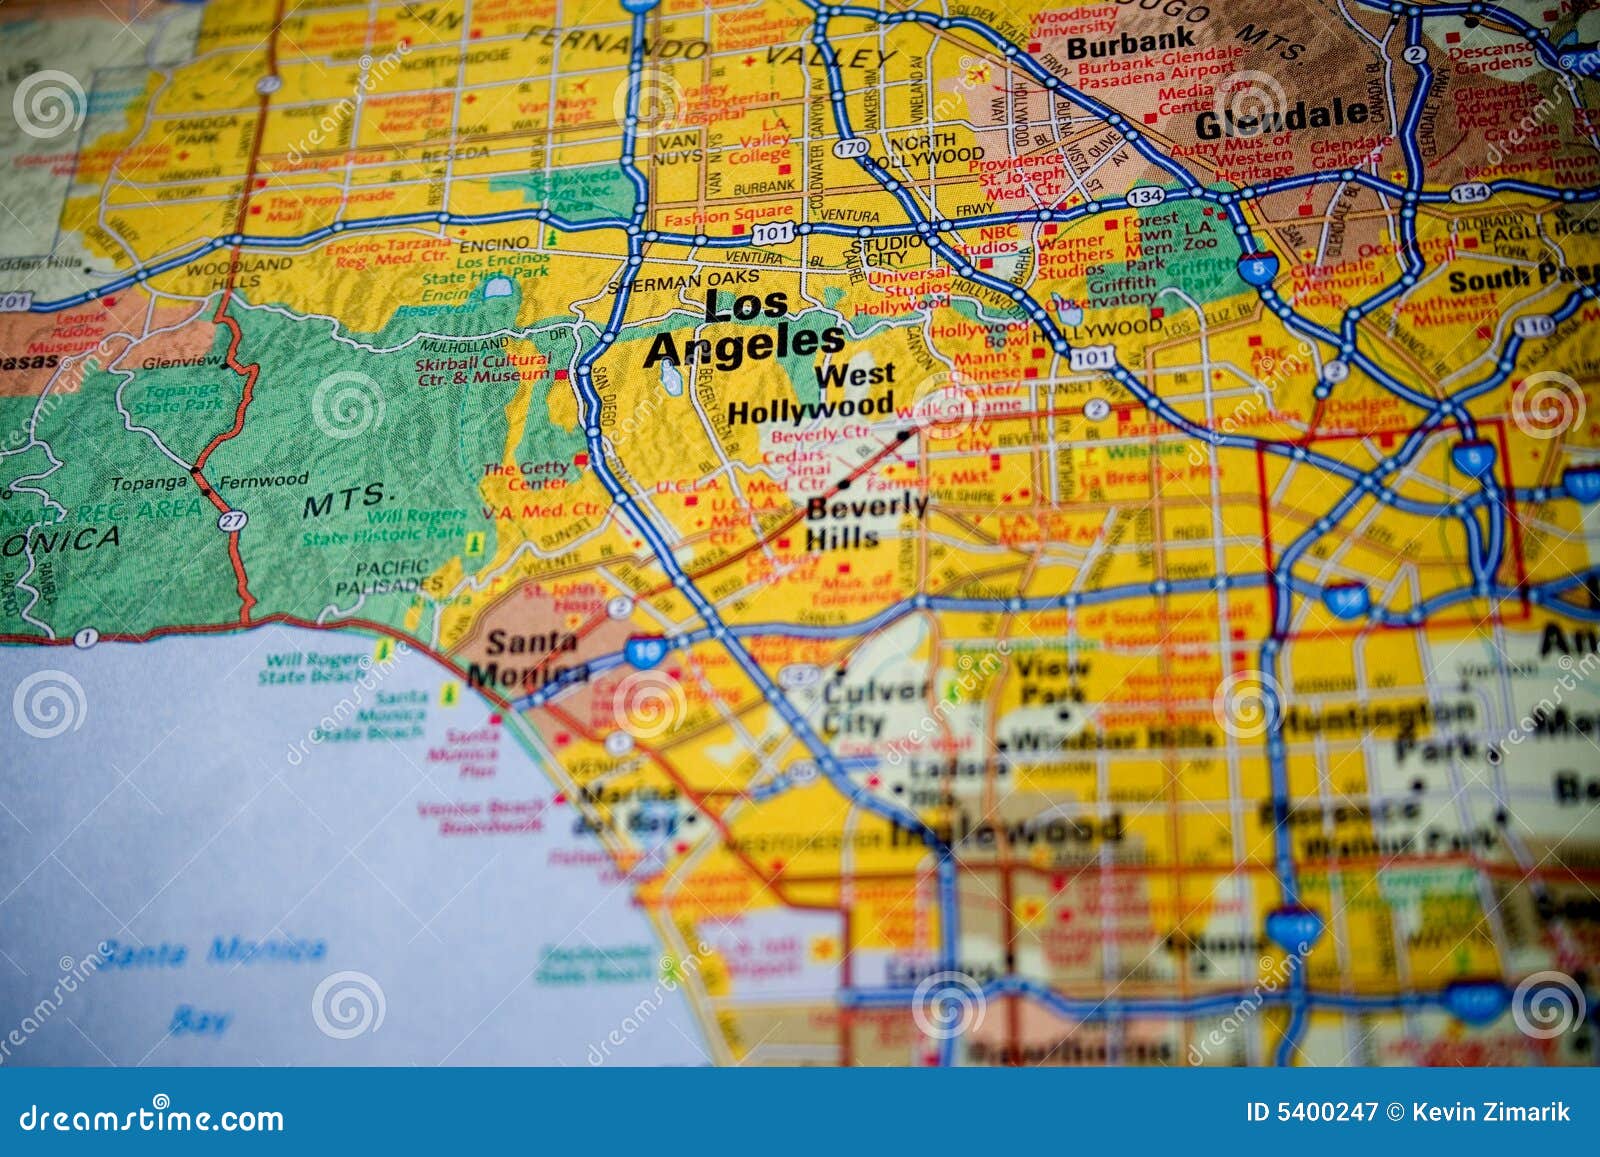 Mapa De Los Angeles Imagem De Stock Imagem De Encontrado 5400247